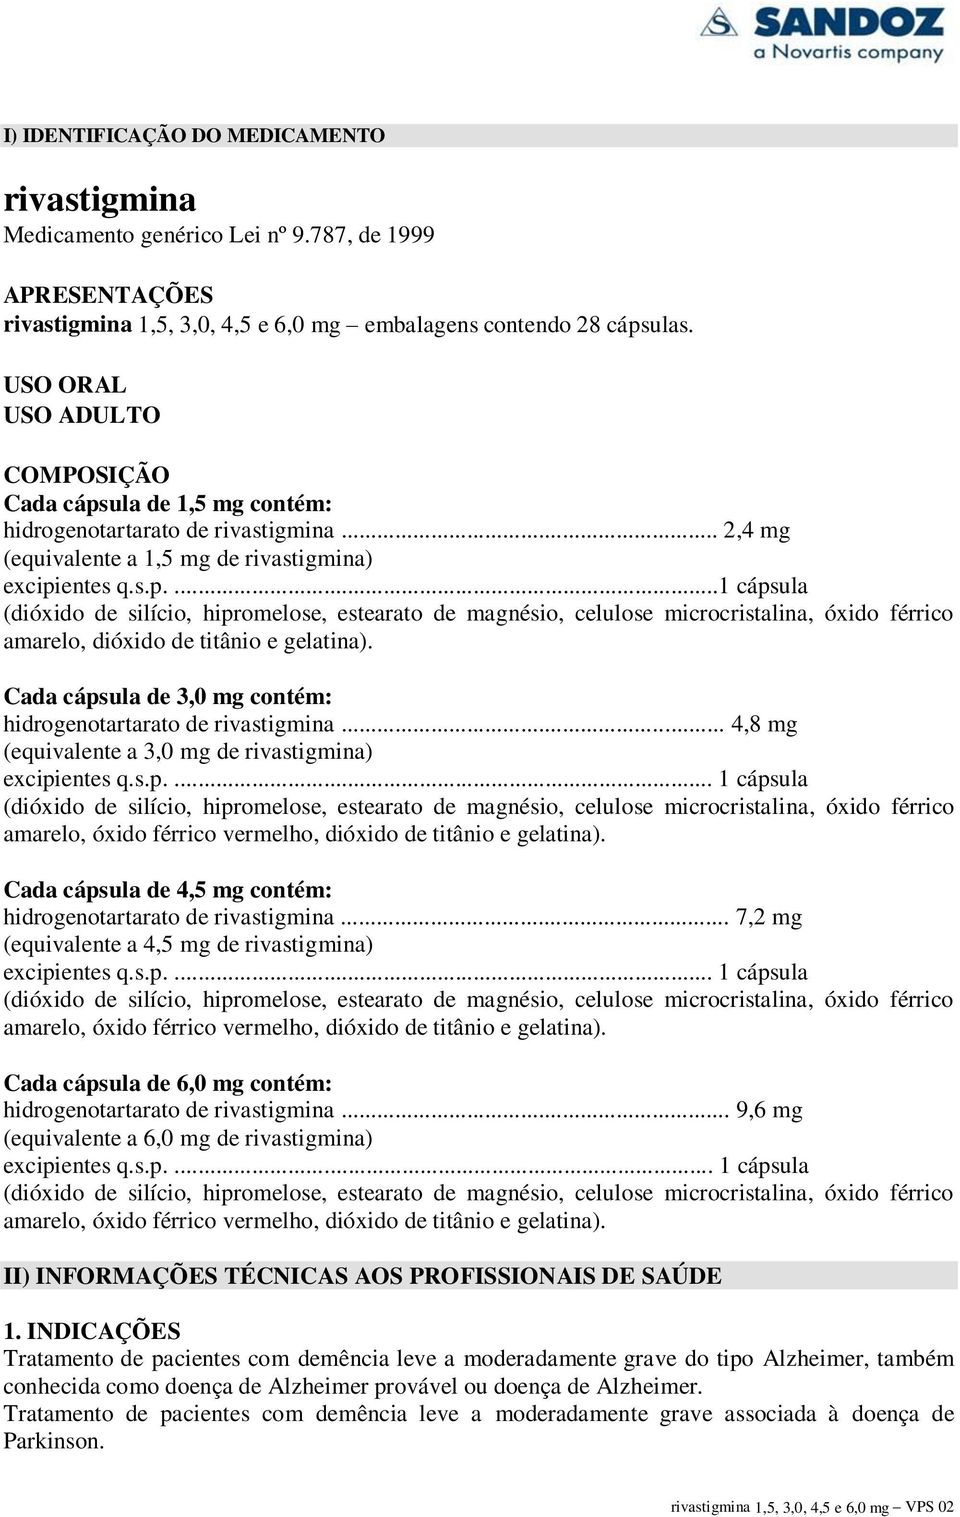 Cada cápsula de 3,0 mg contém: hidrogenotartarato de rivastigmina... 4,8 mg (equivalente a 3,0 mg de rivastigmina) excipientes q.s.p.... 1 cápsula (dióxido de silício, hipromelose, estearato de magnésio, celulose microcristalina, óxido férrico amarelo, óxido férrico vermelho, dióxido de titânio e gelatina).